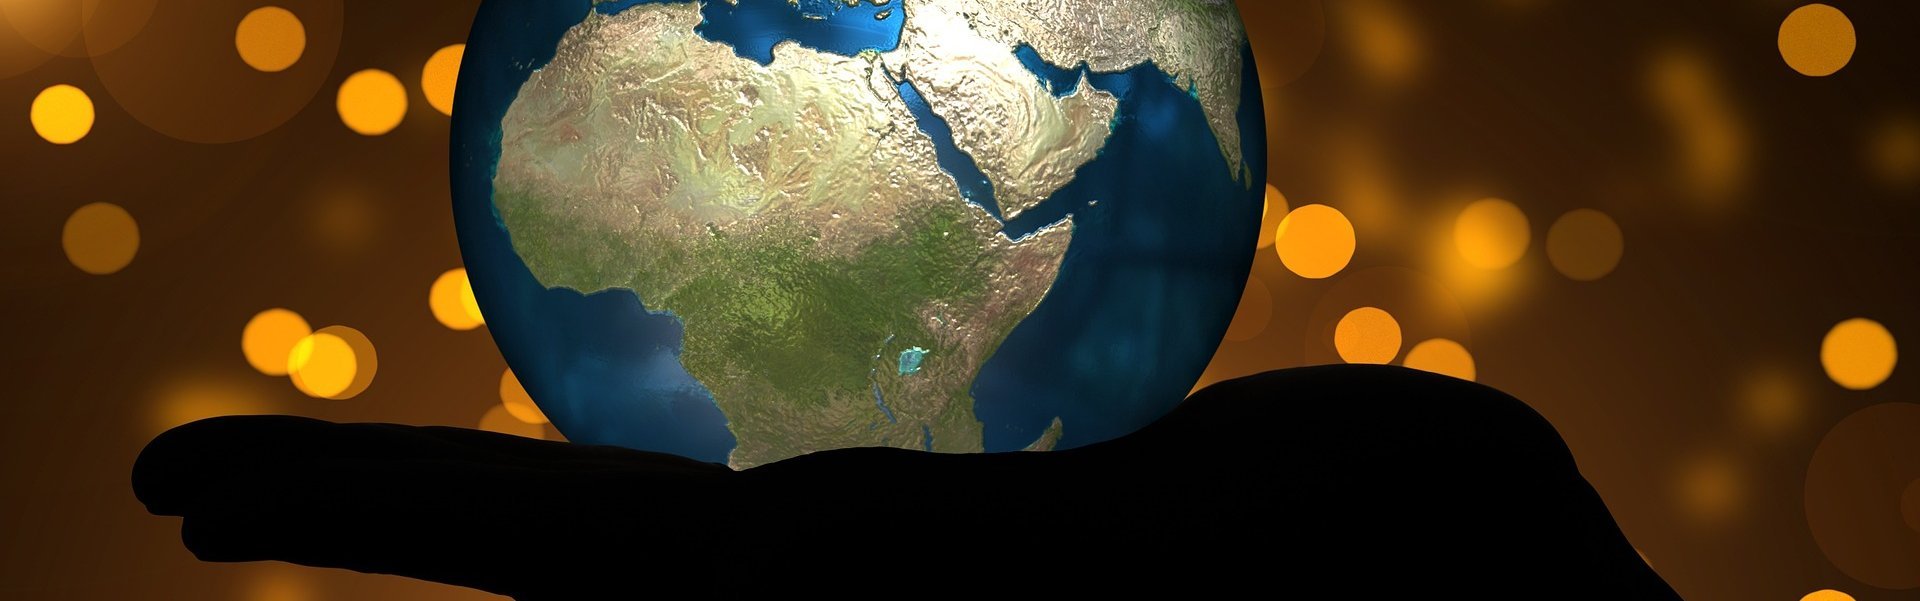 Das Bild zeigt eine Weltkugel, die auf einer Hand liegt. Der afrikanische Kontinent zeigt nach vorn.